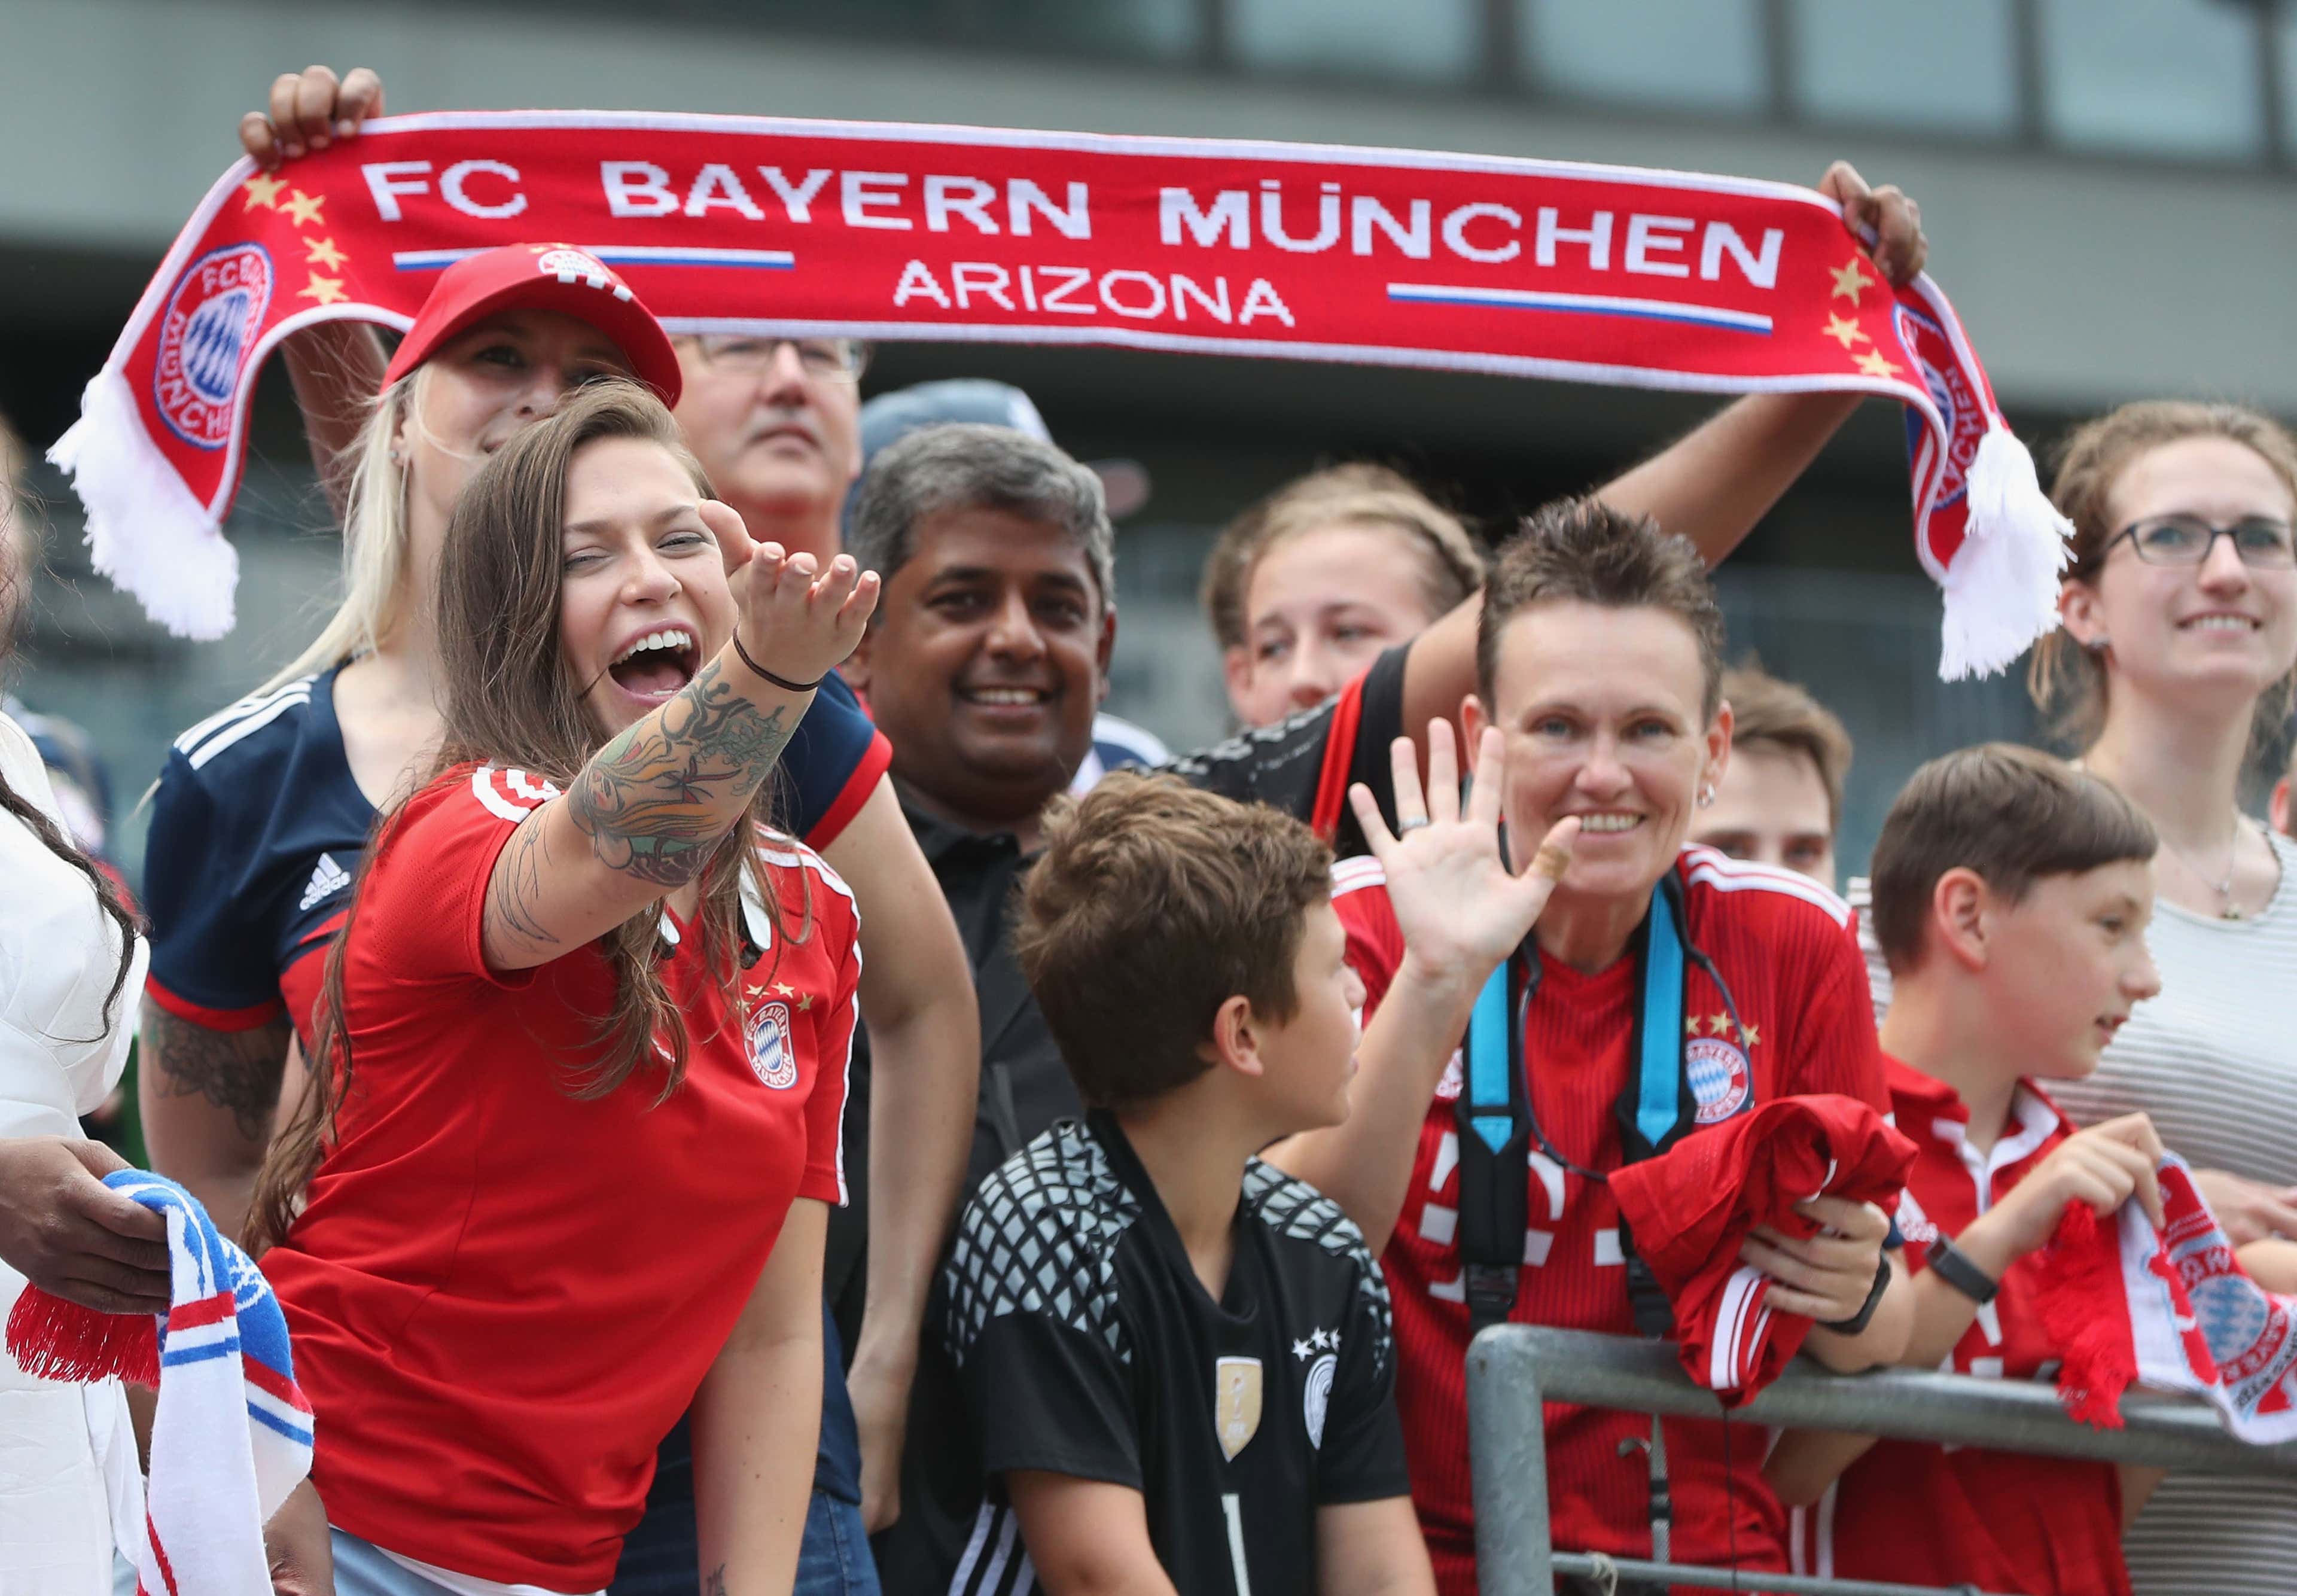 FC Bayern München fans USA Arizona